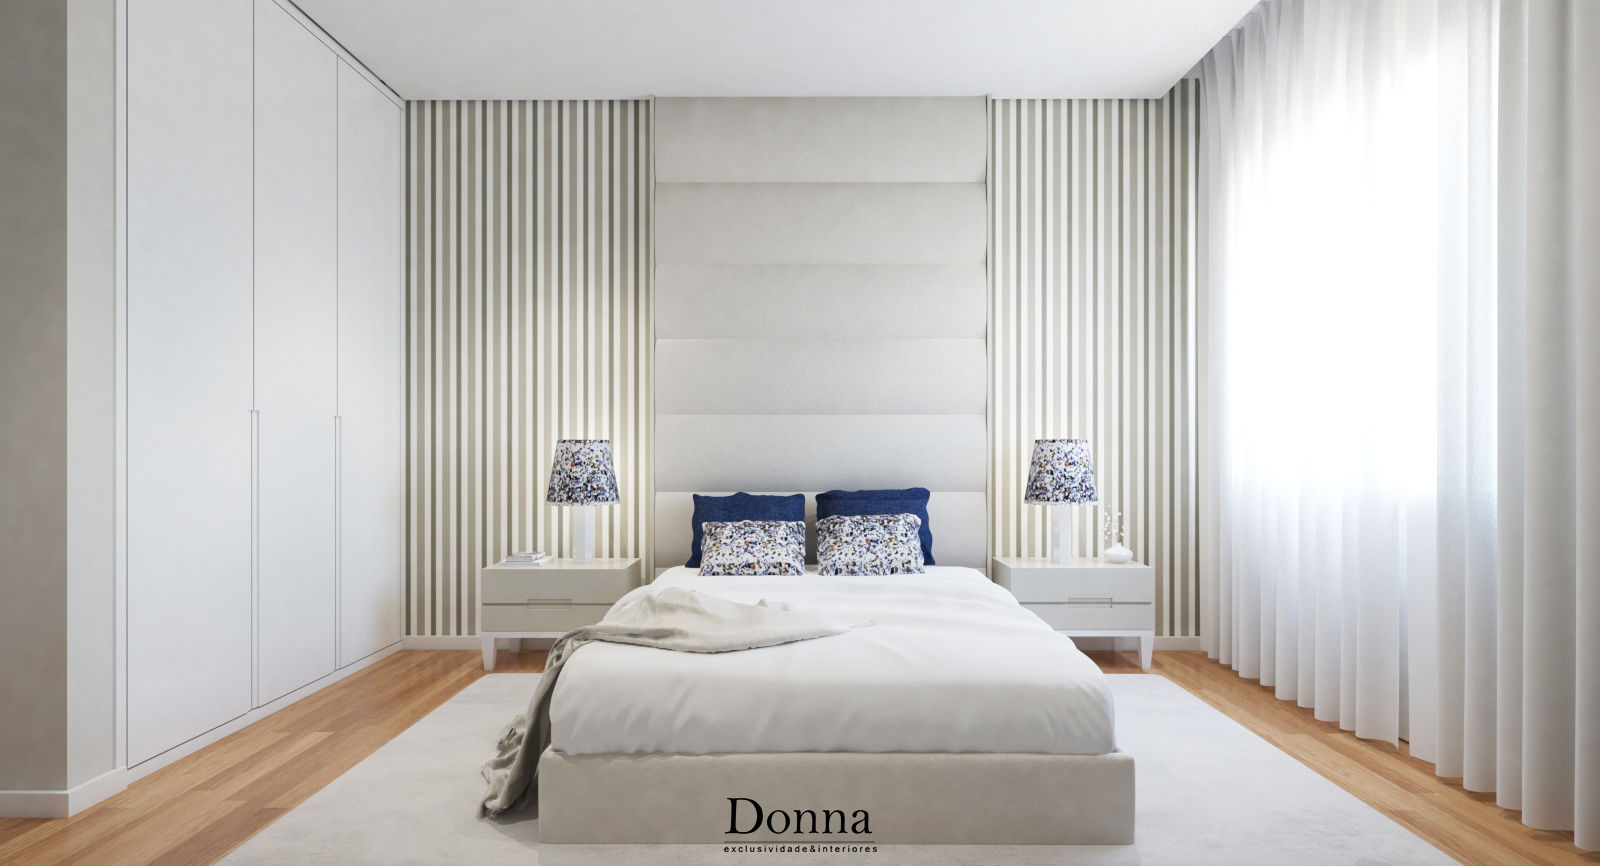 Apartamento Duplex no Porto, Donna - Exclusividade e Design Donna - Exclusividade e Design Dormitorios modernos Camas y cabeceras